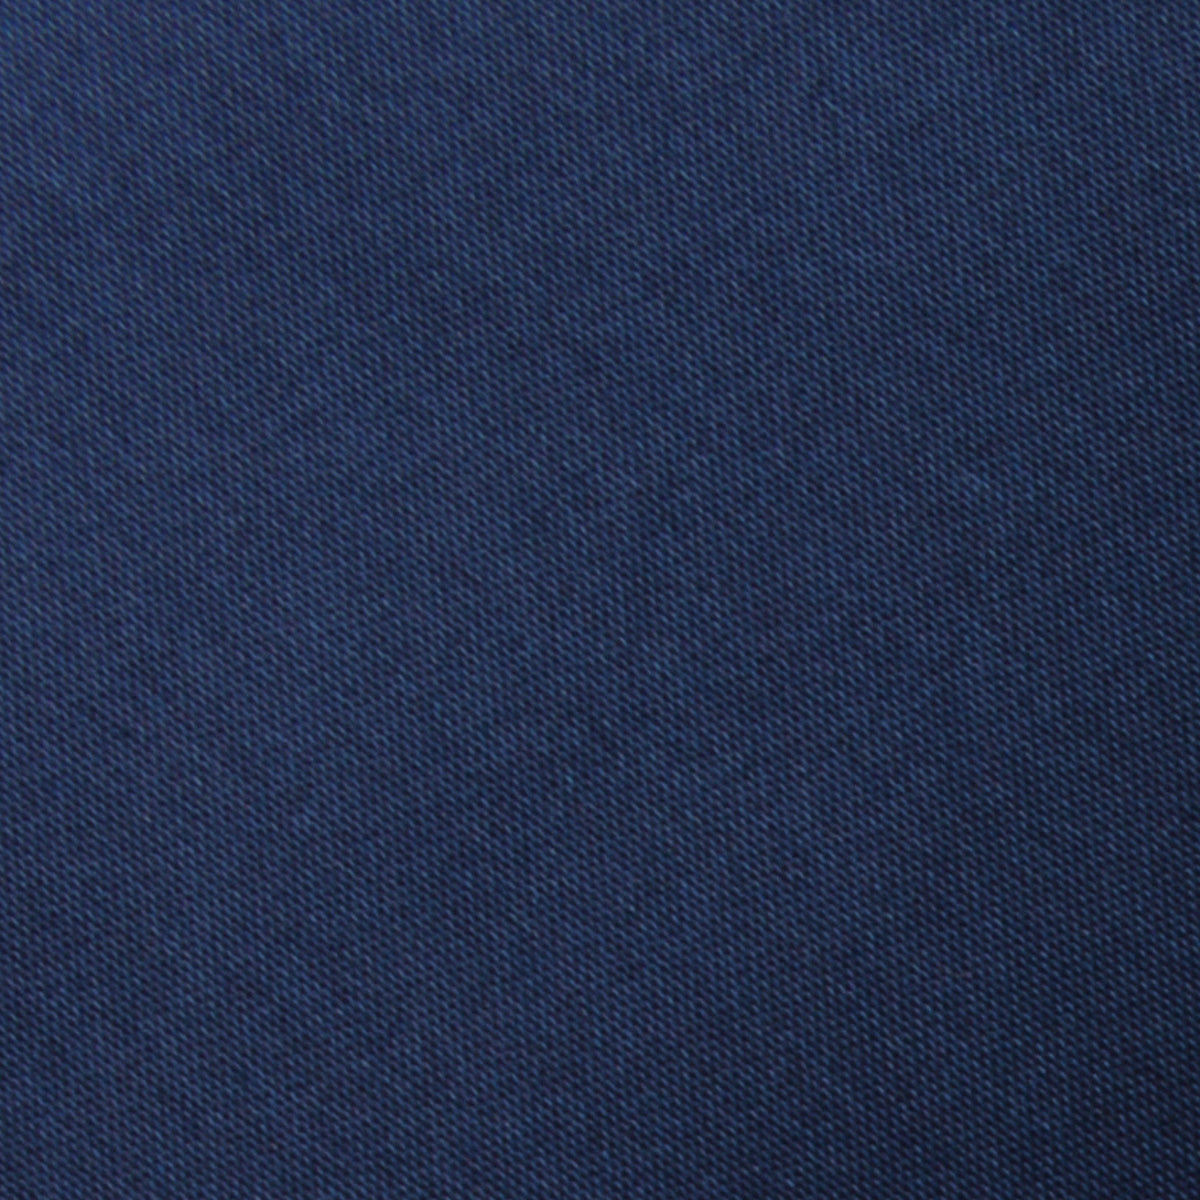 Admiral Navy Blue Satin Necktie Fabric